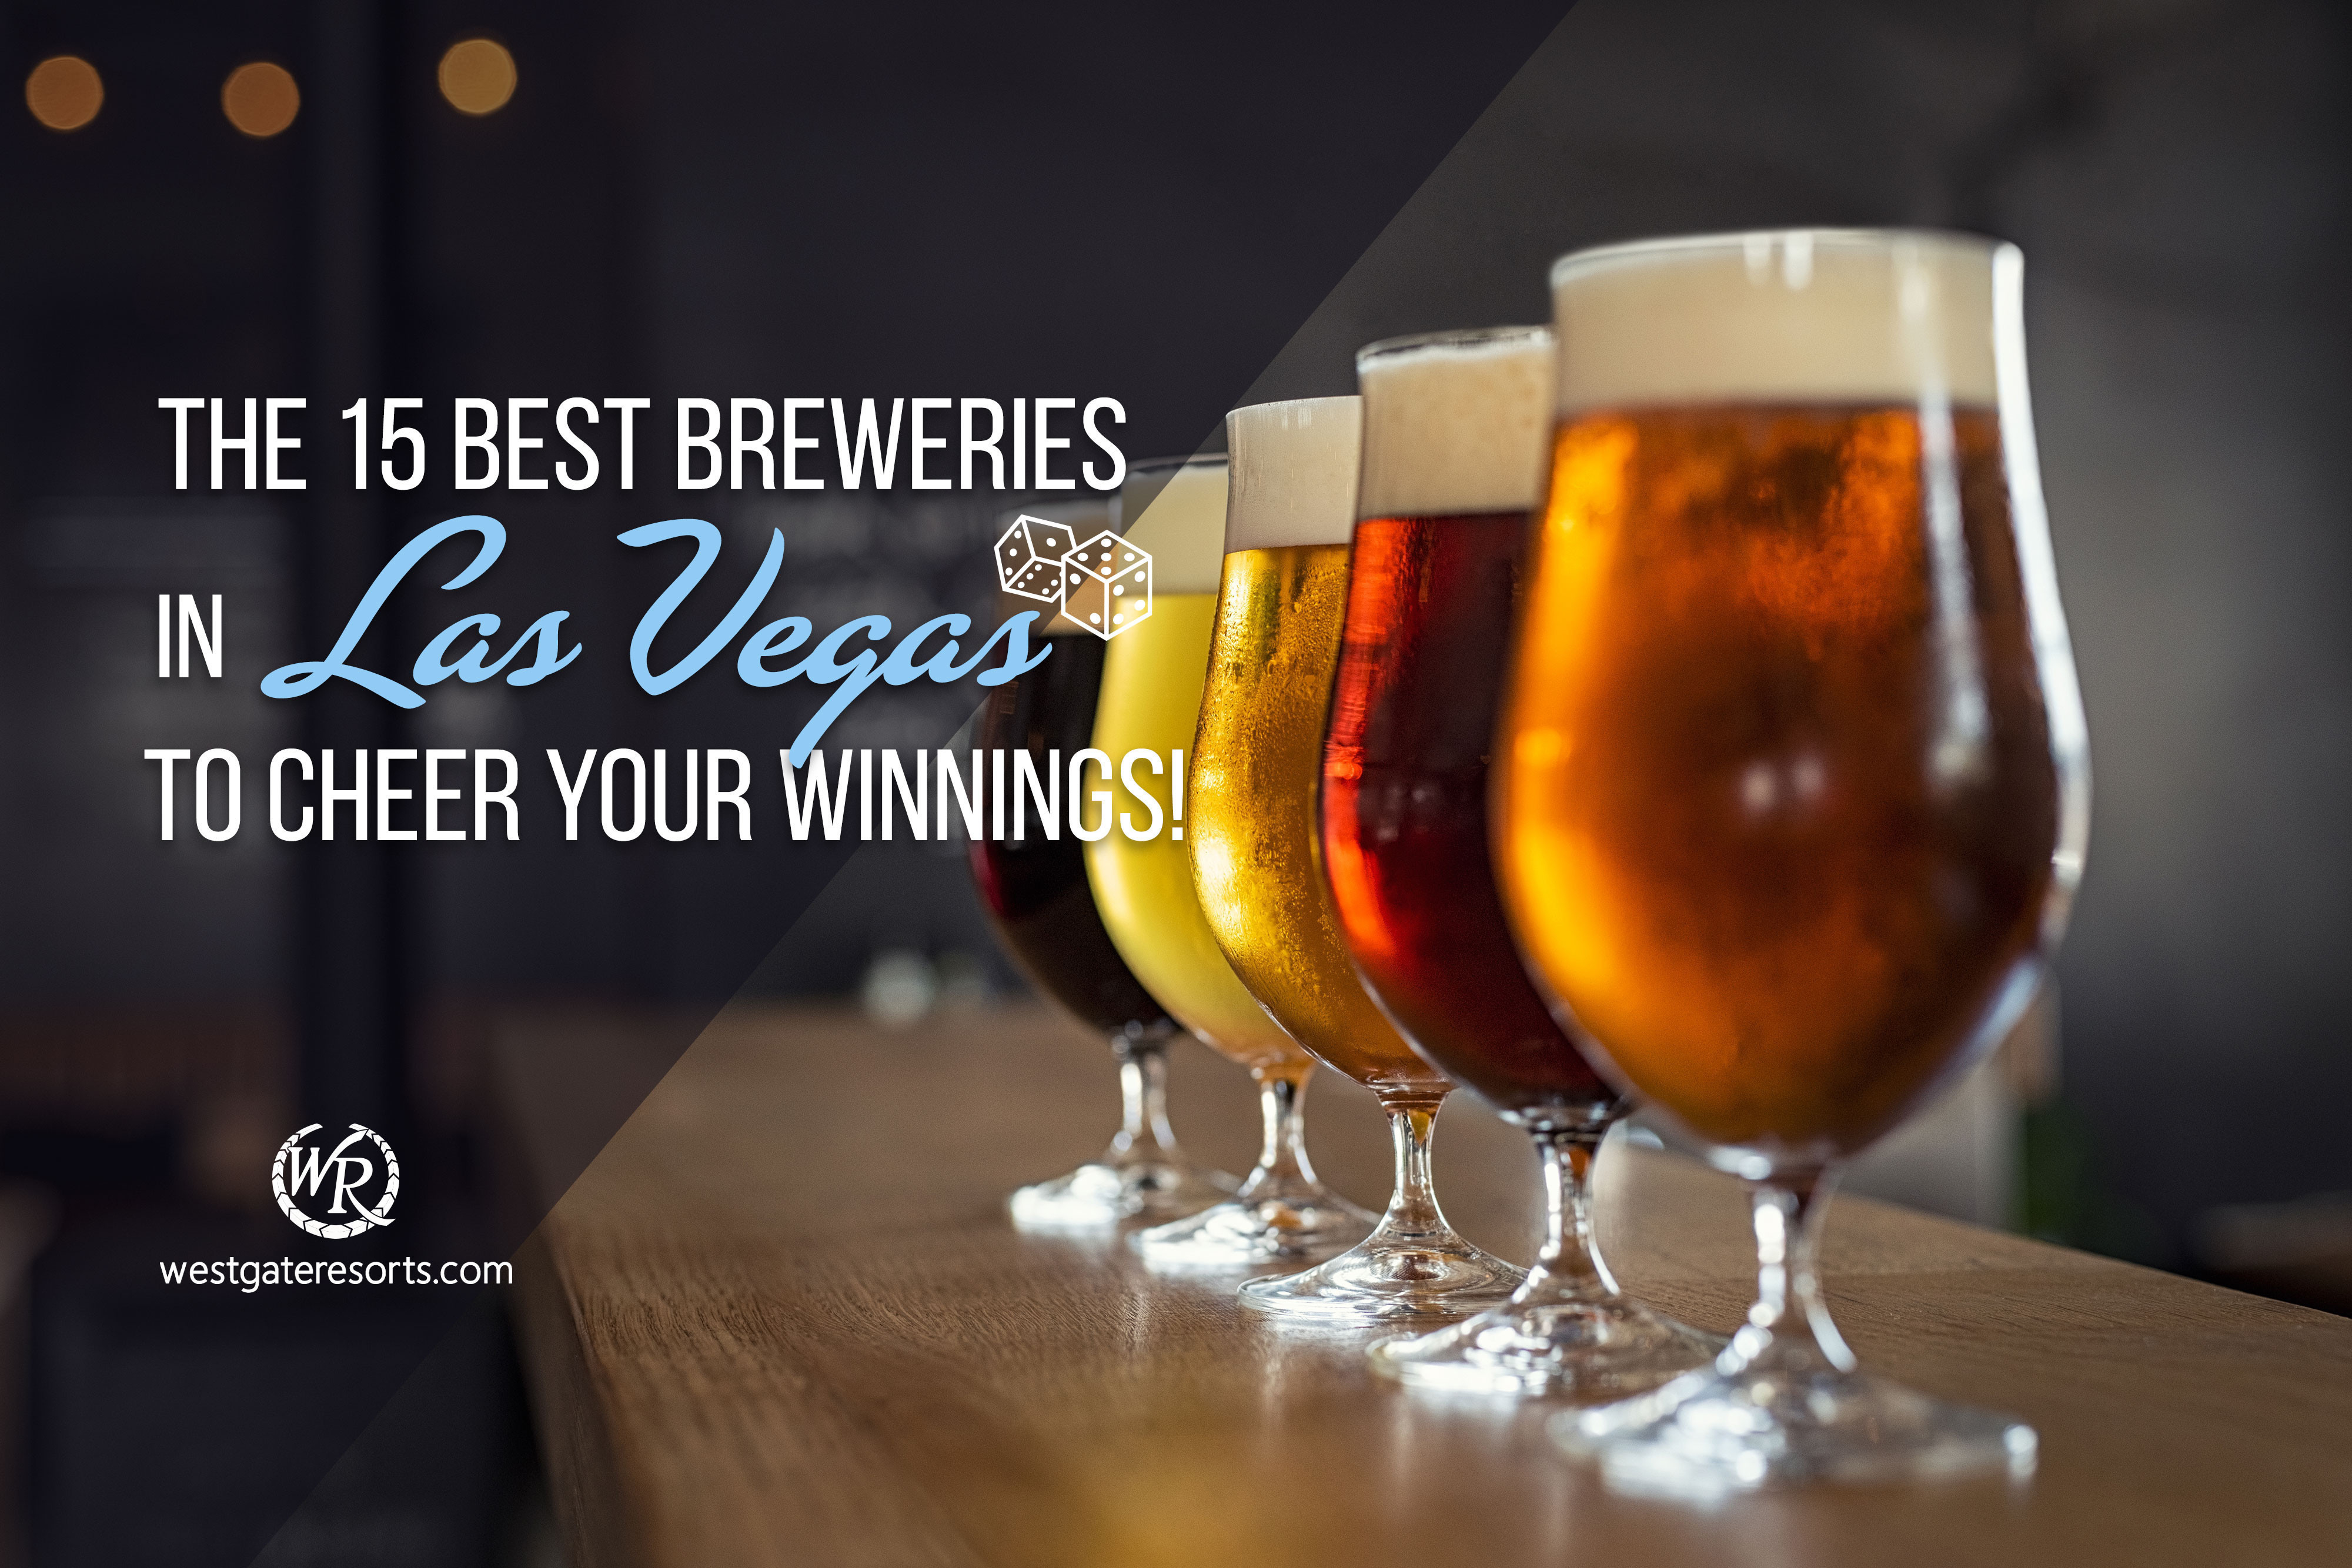 The 15 Best Breweries in Las Vegas to Cheer Your Winnings!